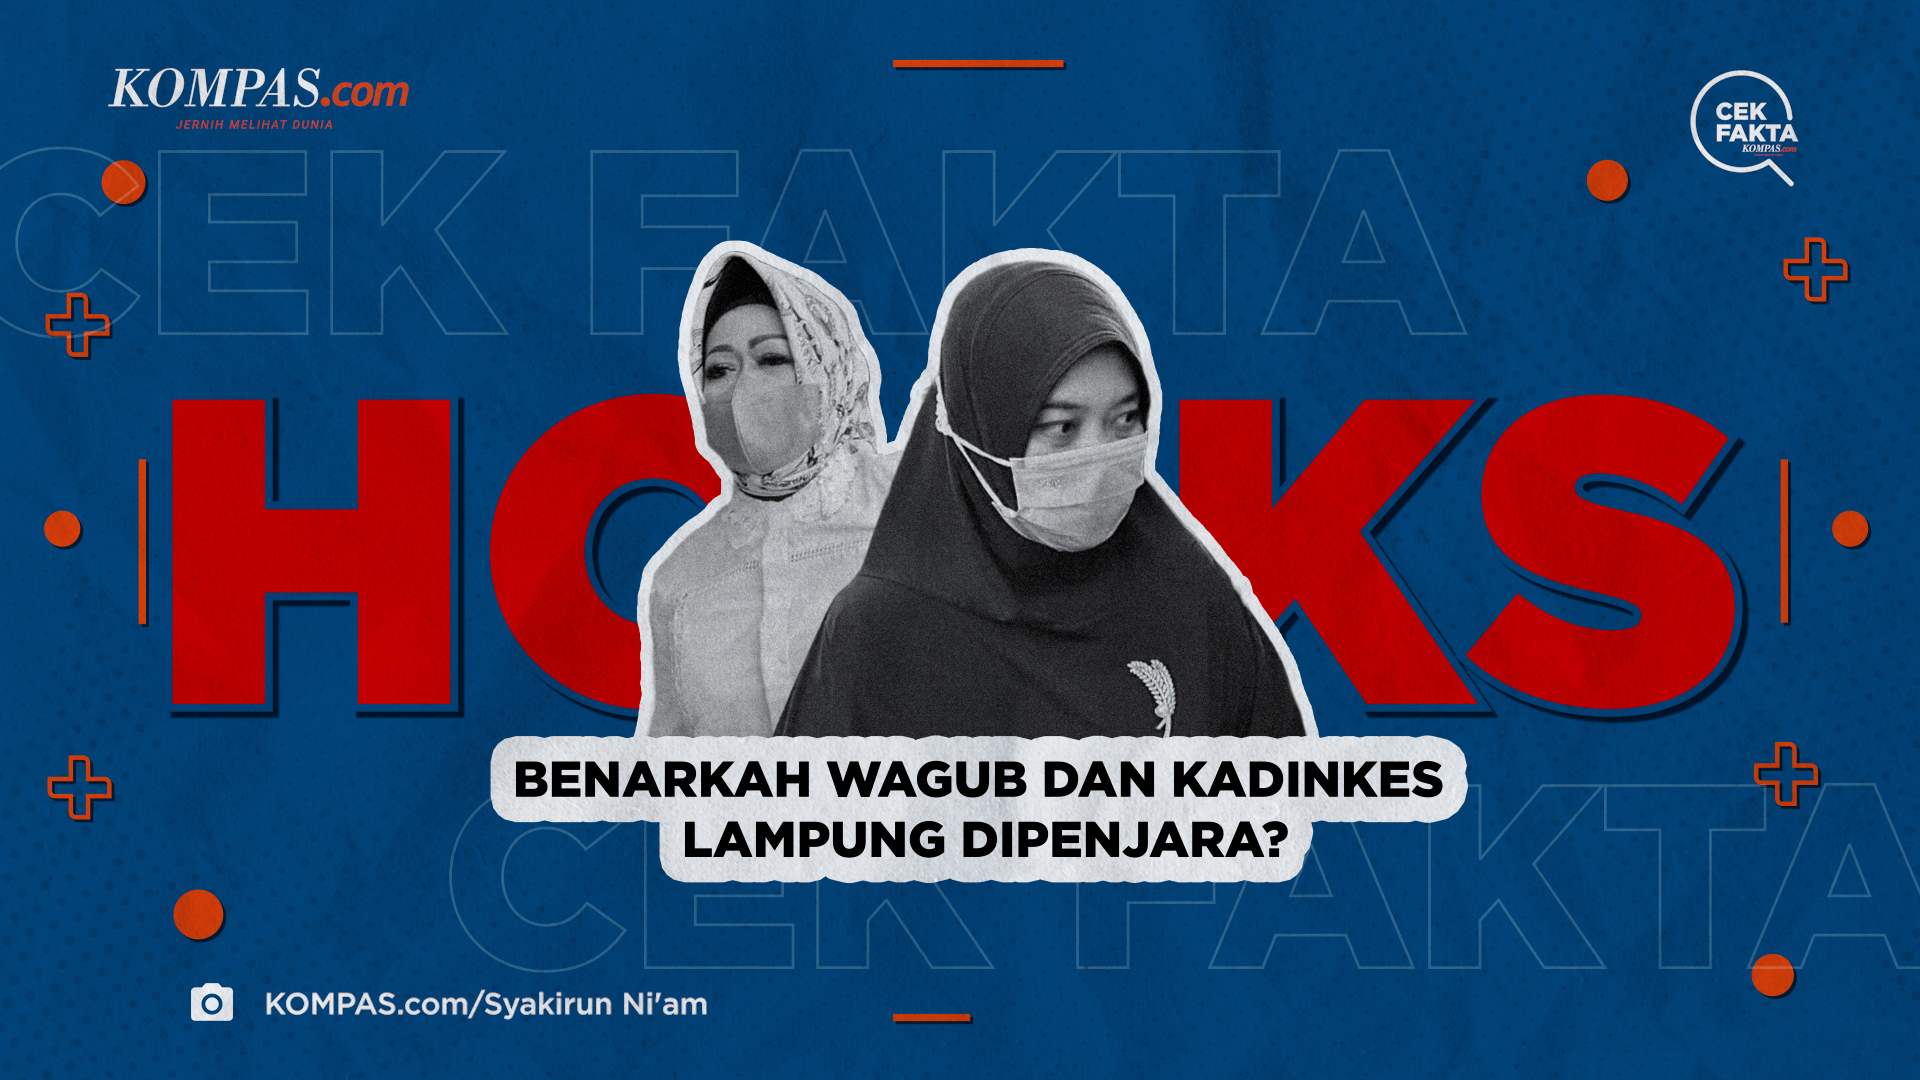 Benarkah Wagub dan Kadinkes Lampung Dipenjara?